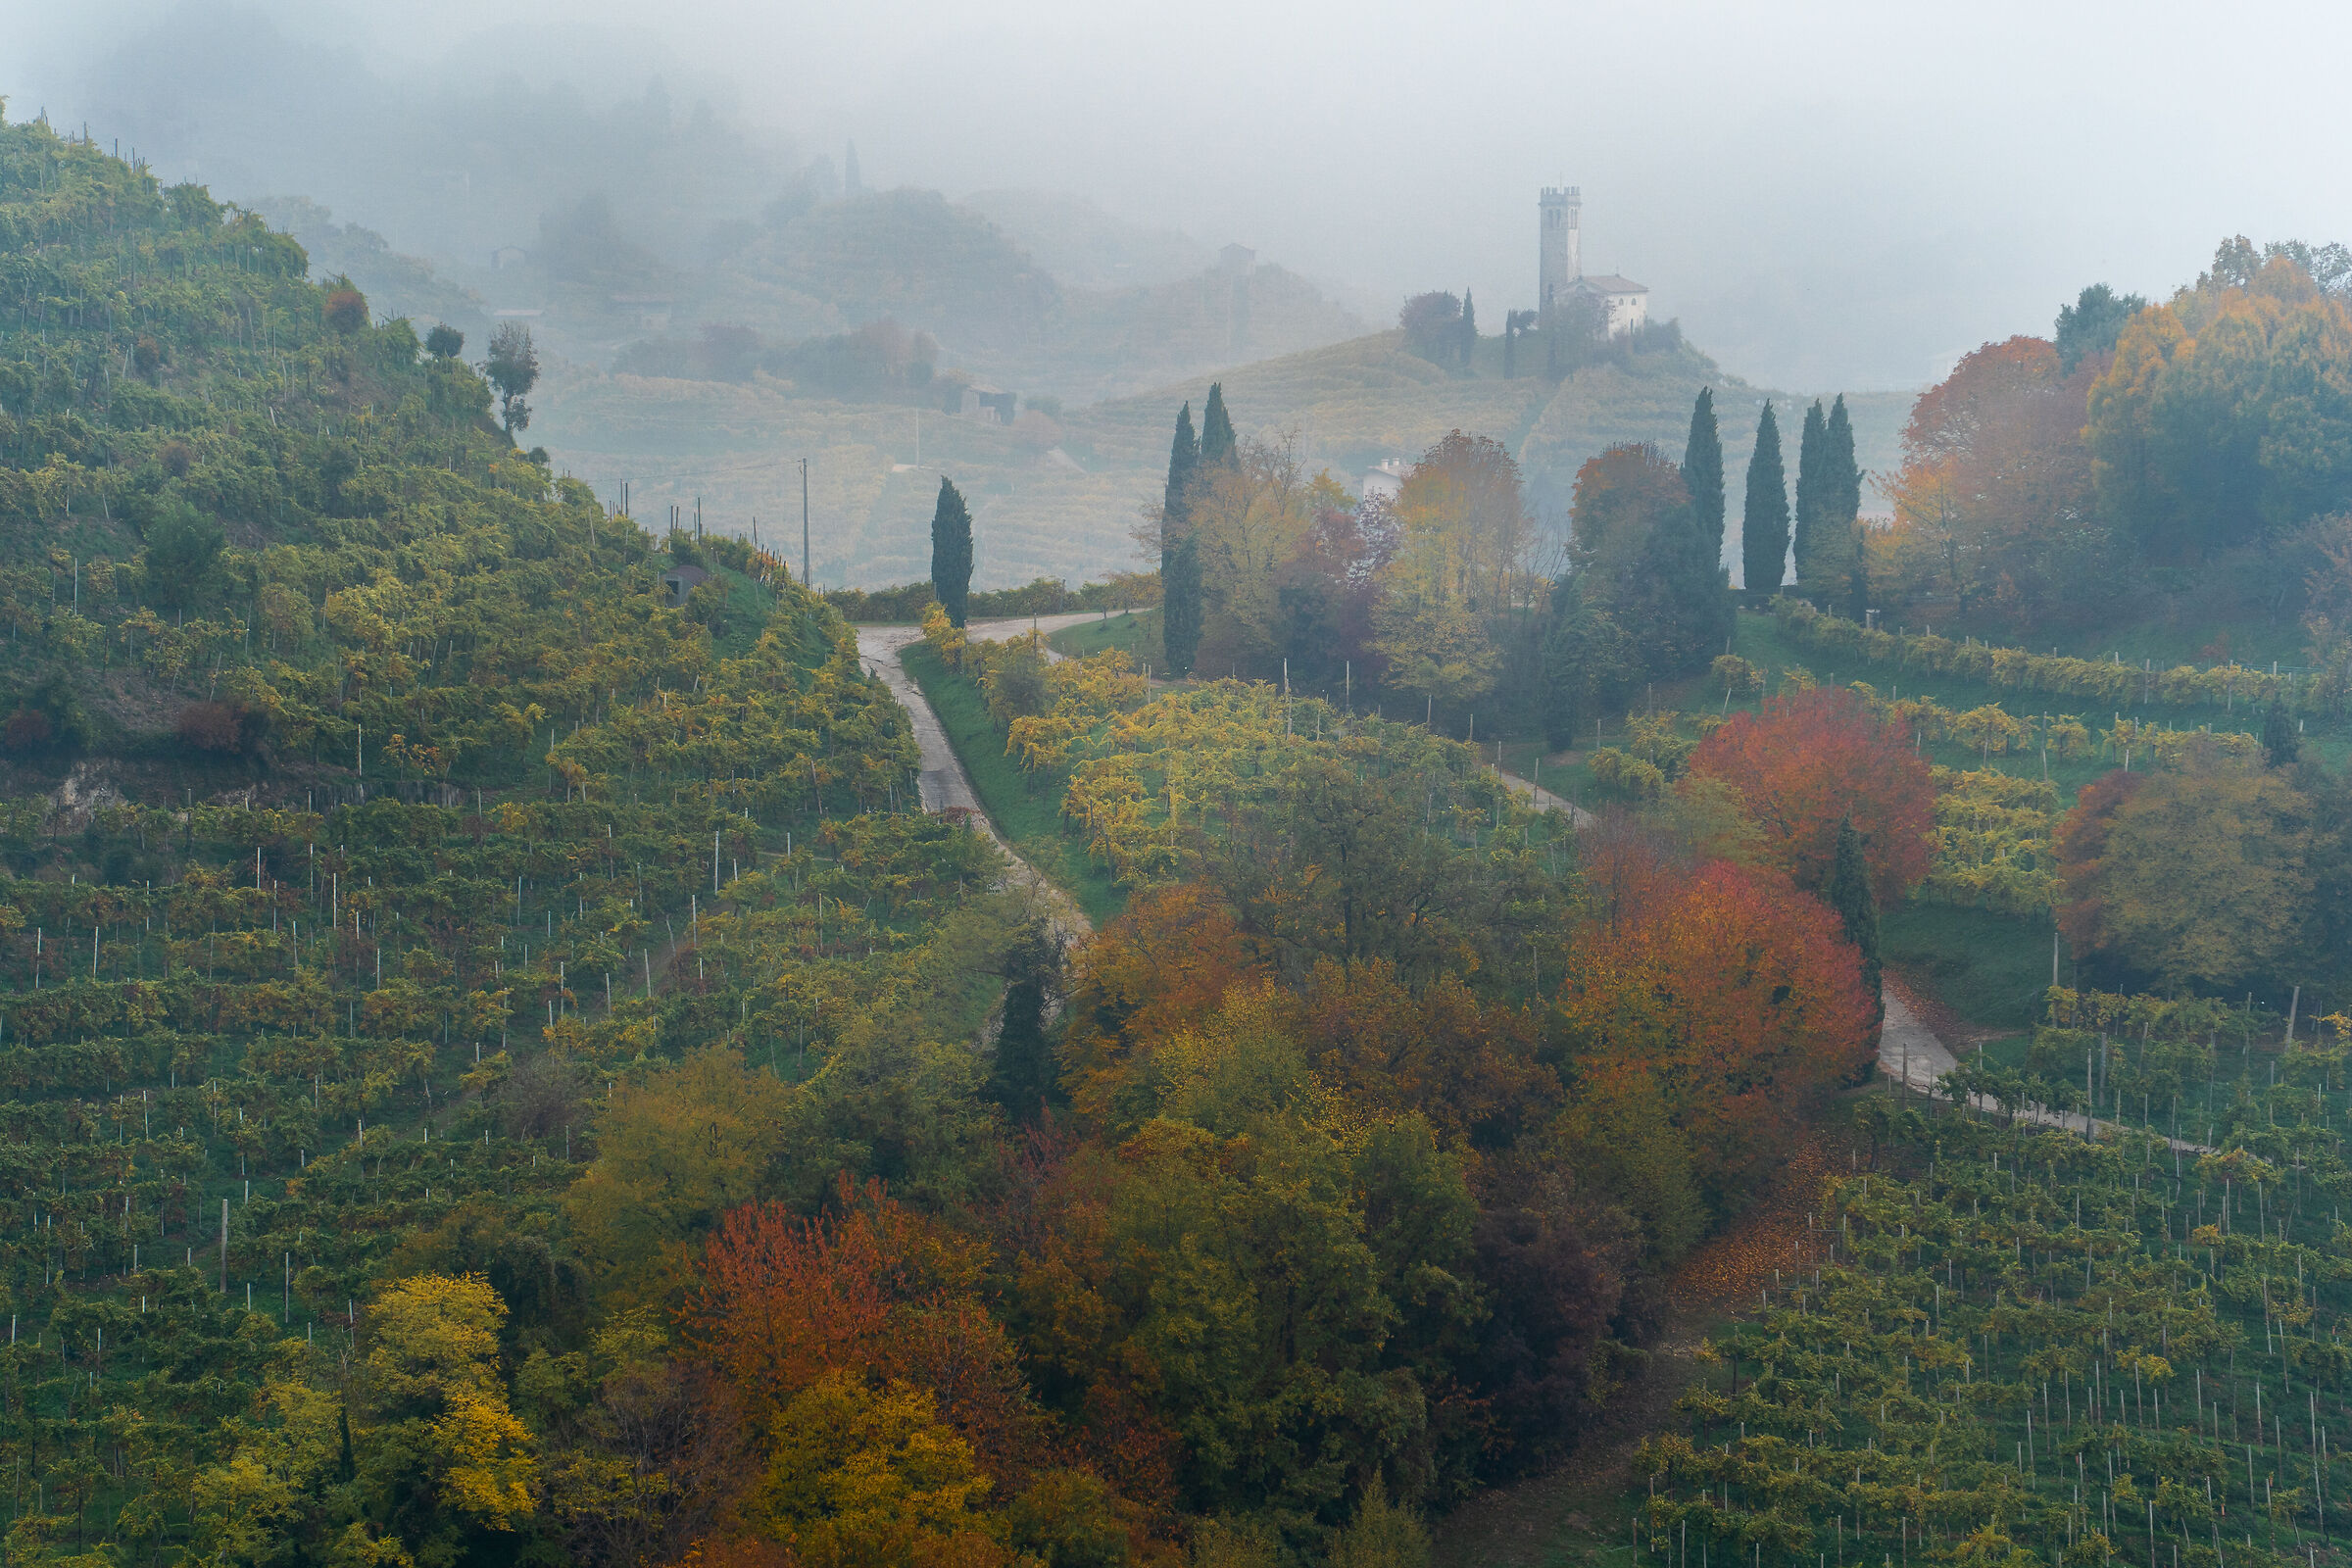 ... autumn fog on the hills ......